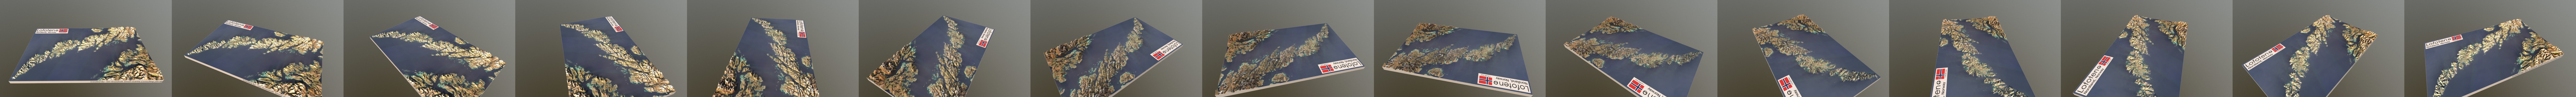 🥇 Vinilos decorativos islas lofoten noruega 3d 🥇